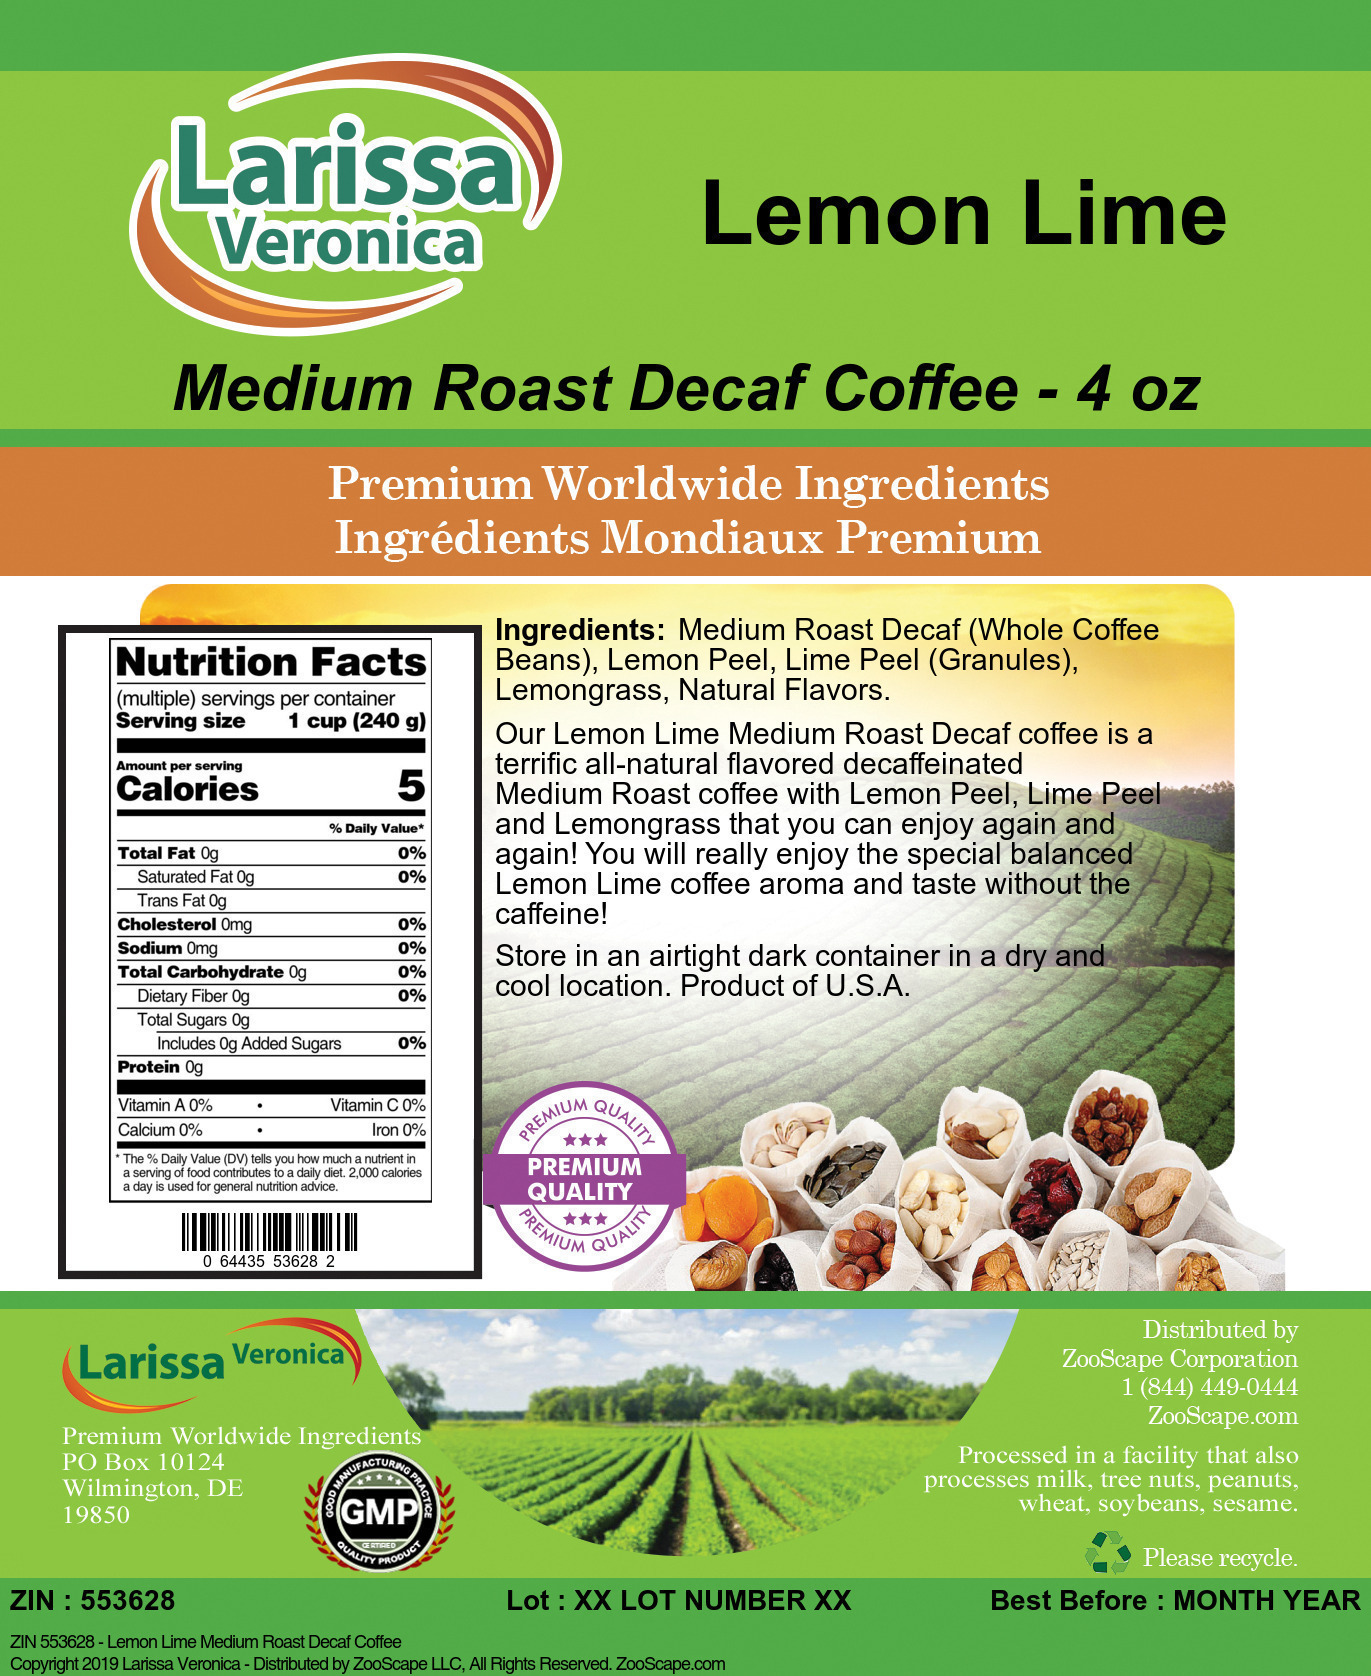 Lemon Lime Medium Roast Decaf Coffee - Label